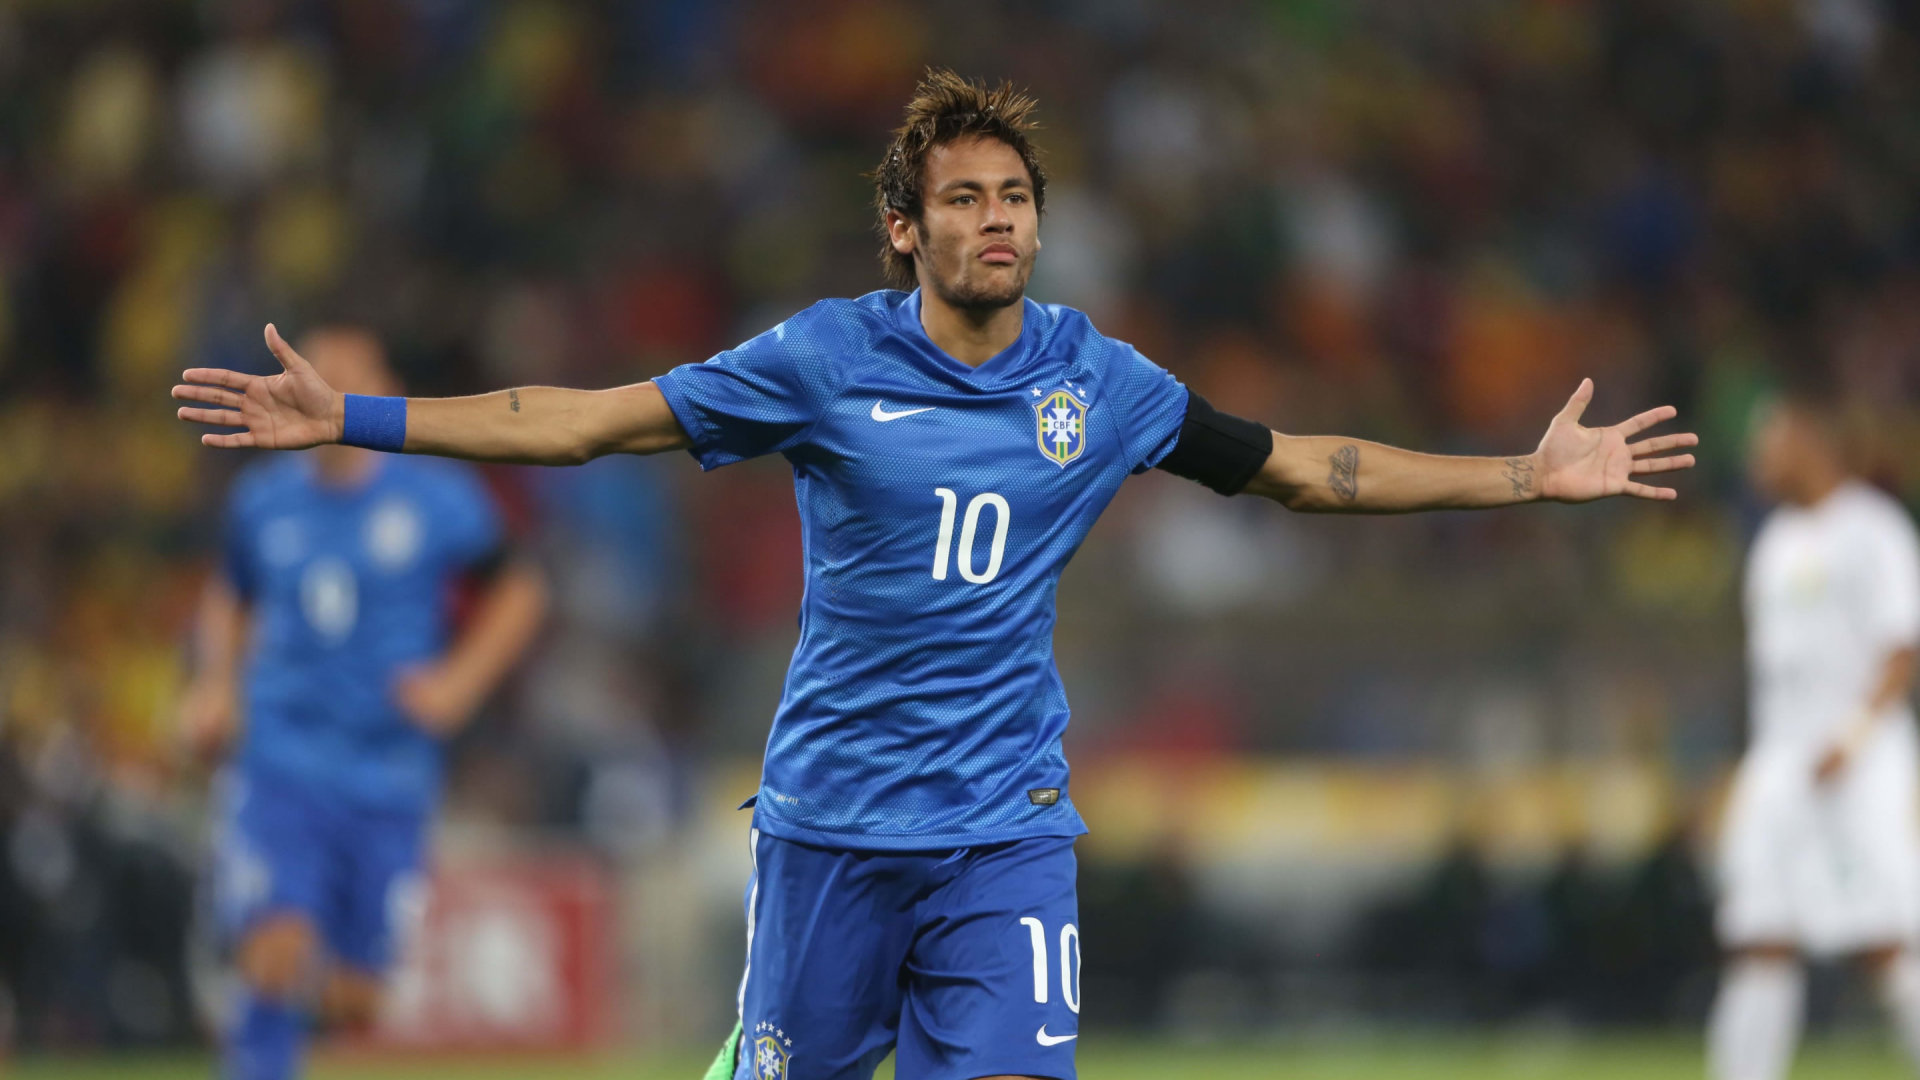 Neymar Brazil blue jersey celebrating 